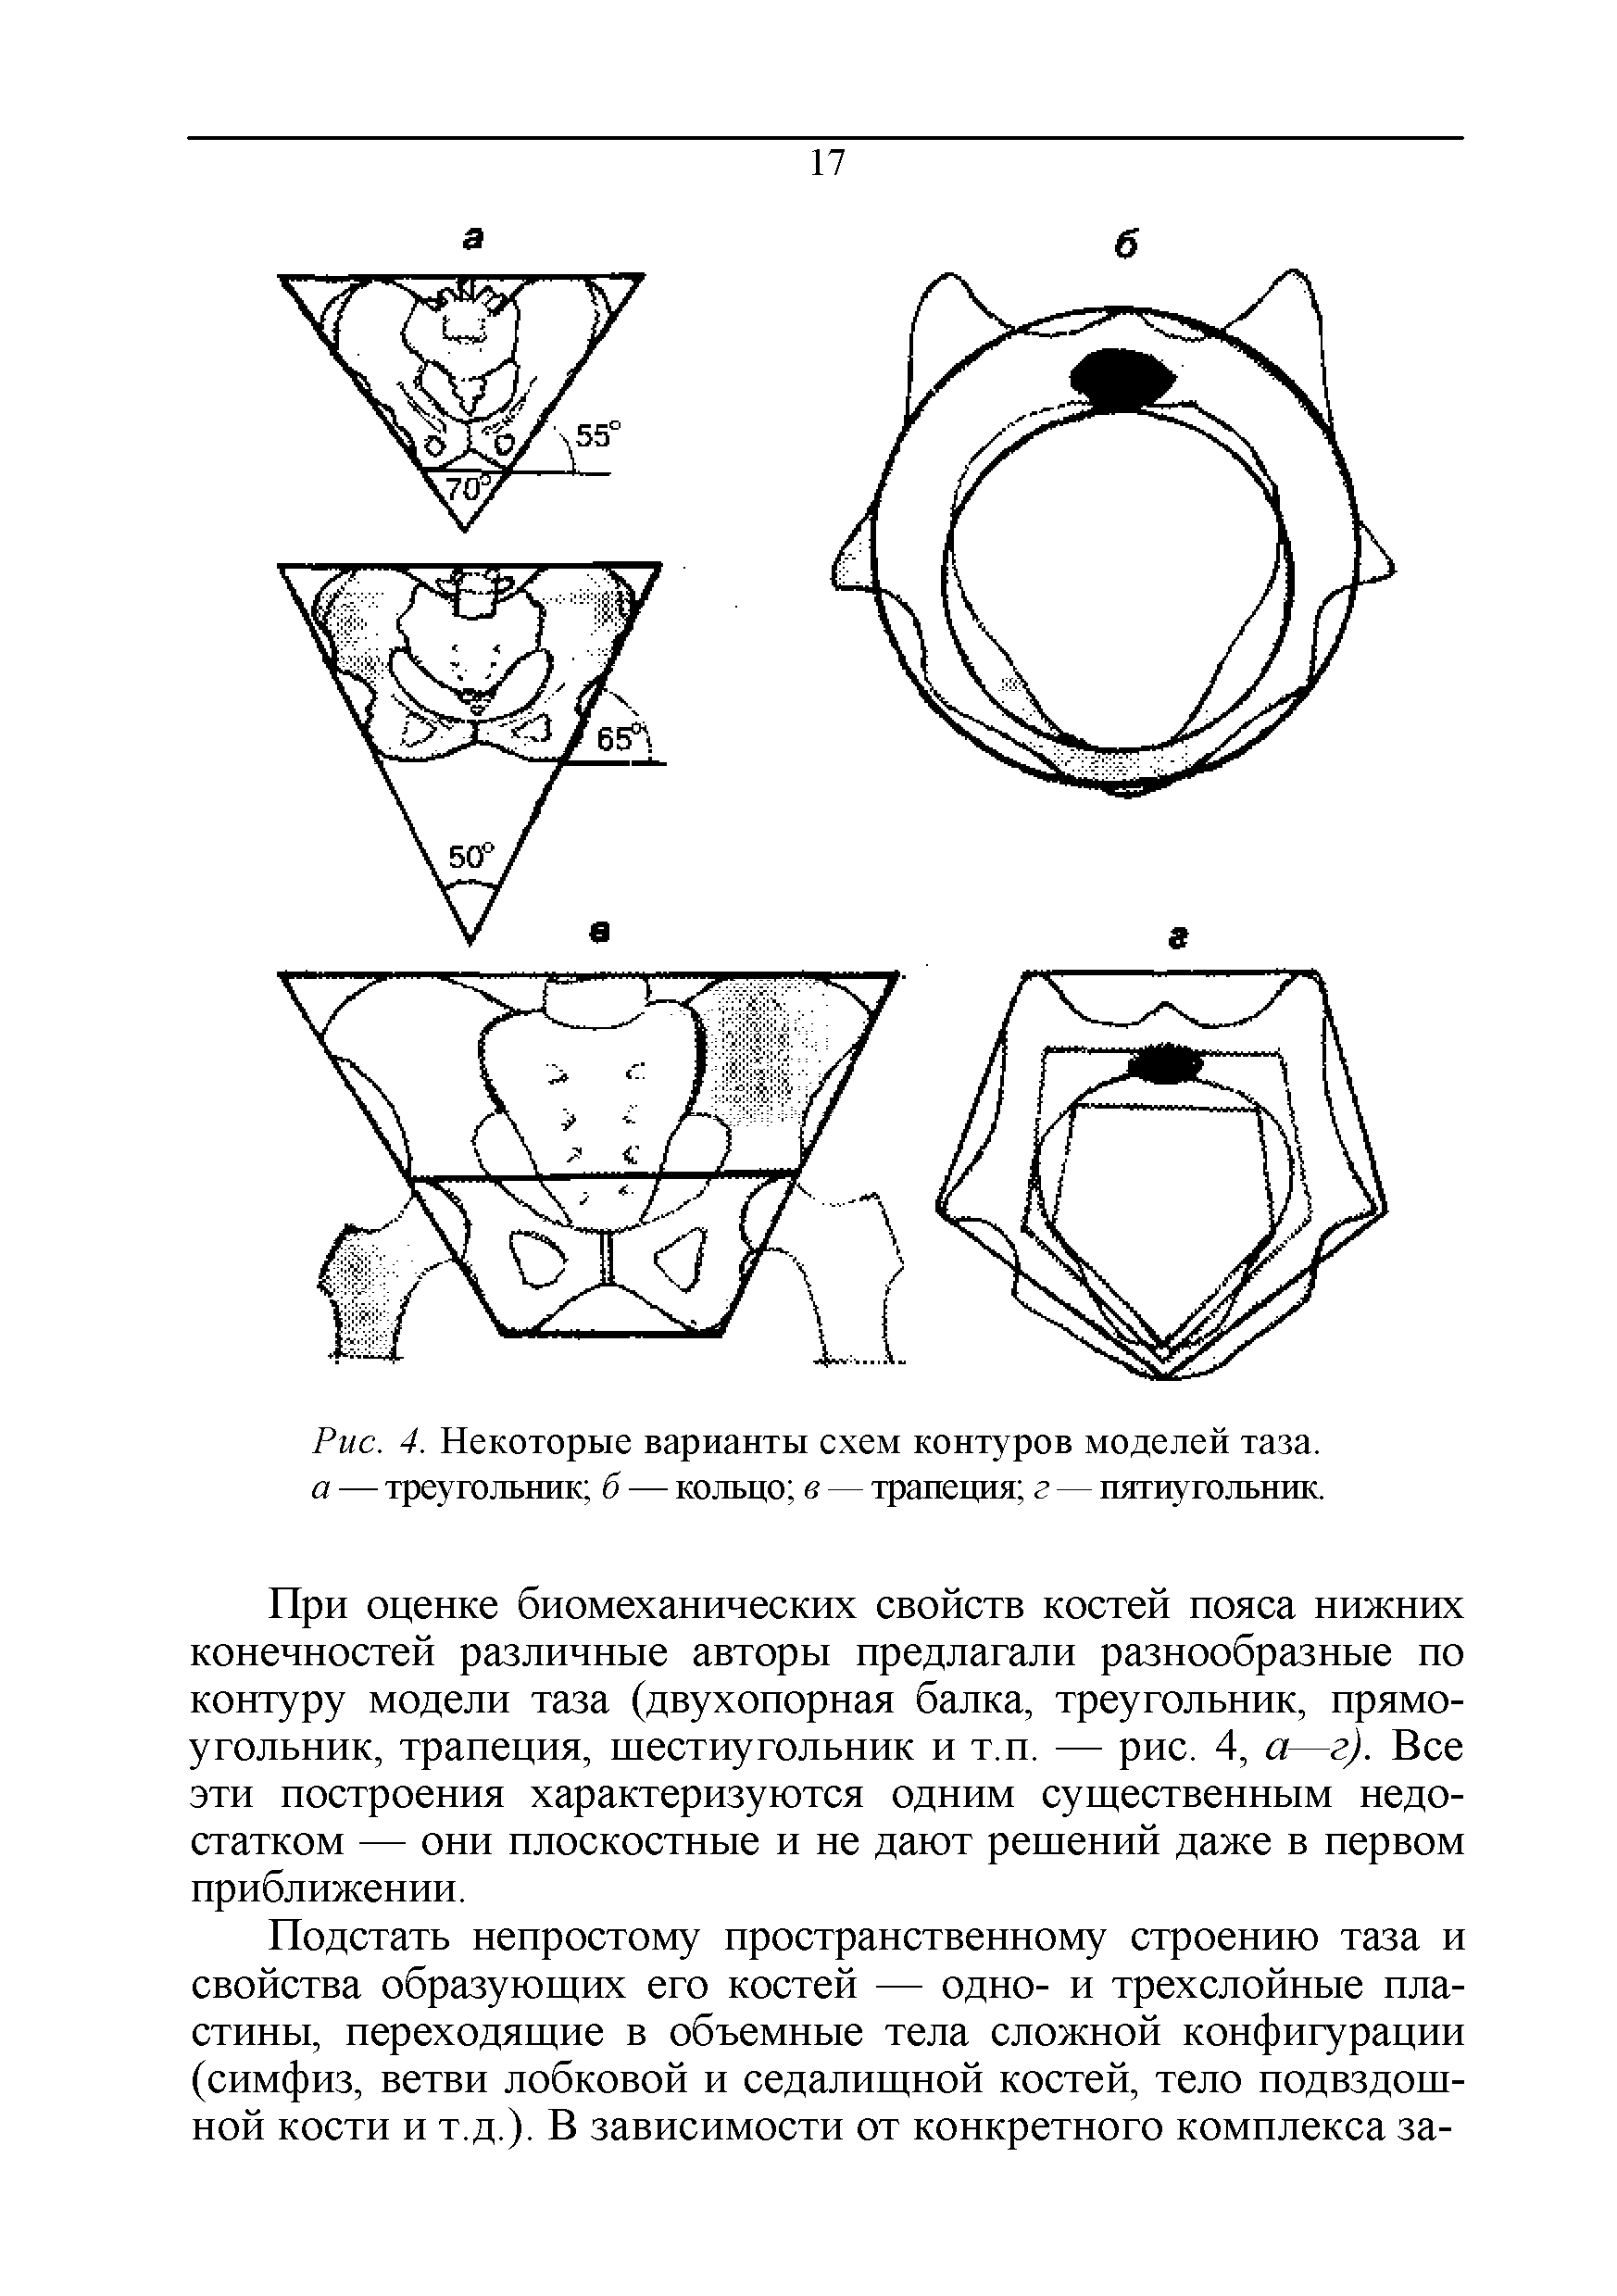 Рис. 4. Некоторые варианты схем контуров моделей таза. а — треугольник б — кольцо в — трапеция г — пятиугольник.